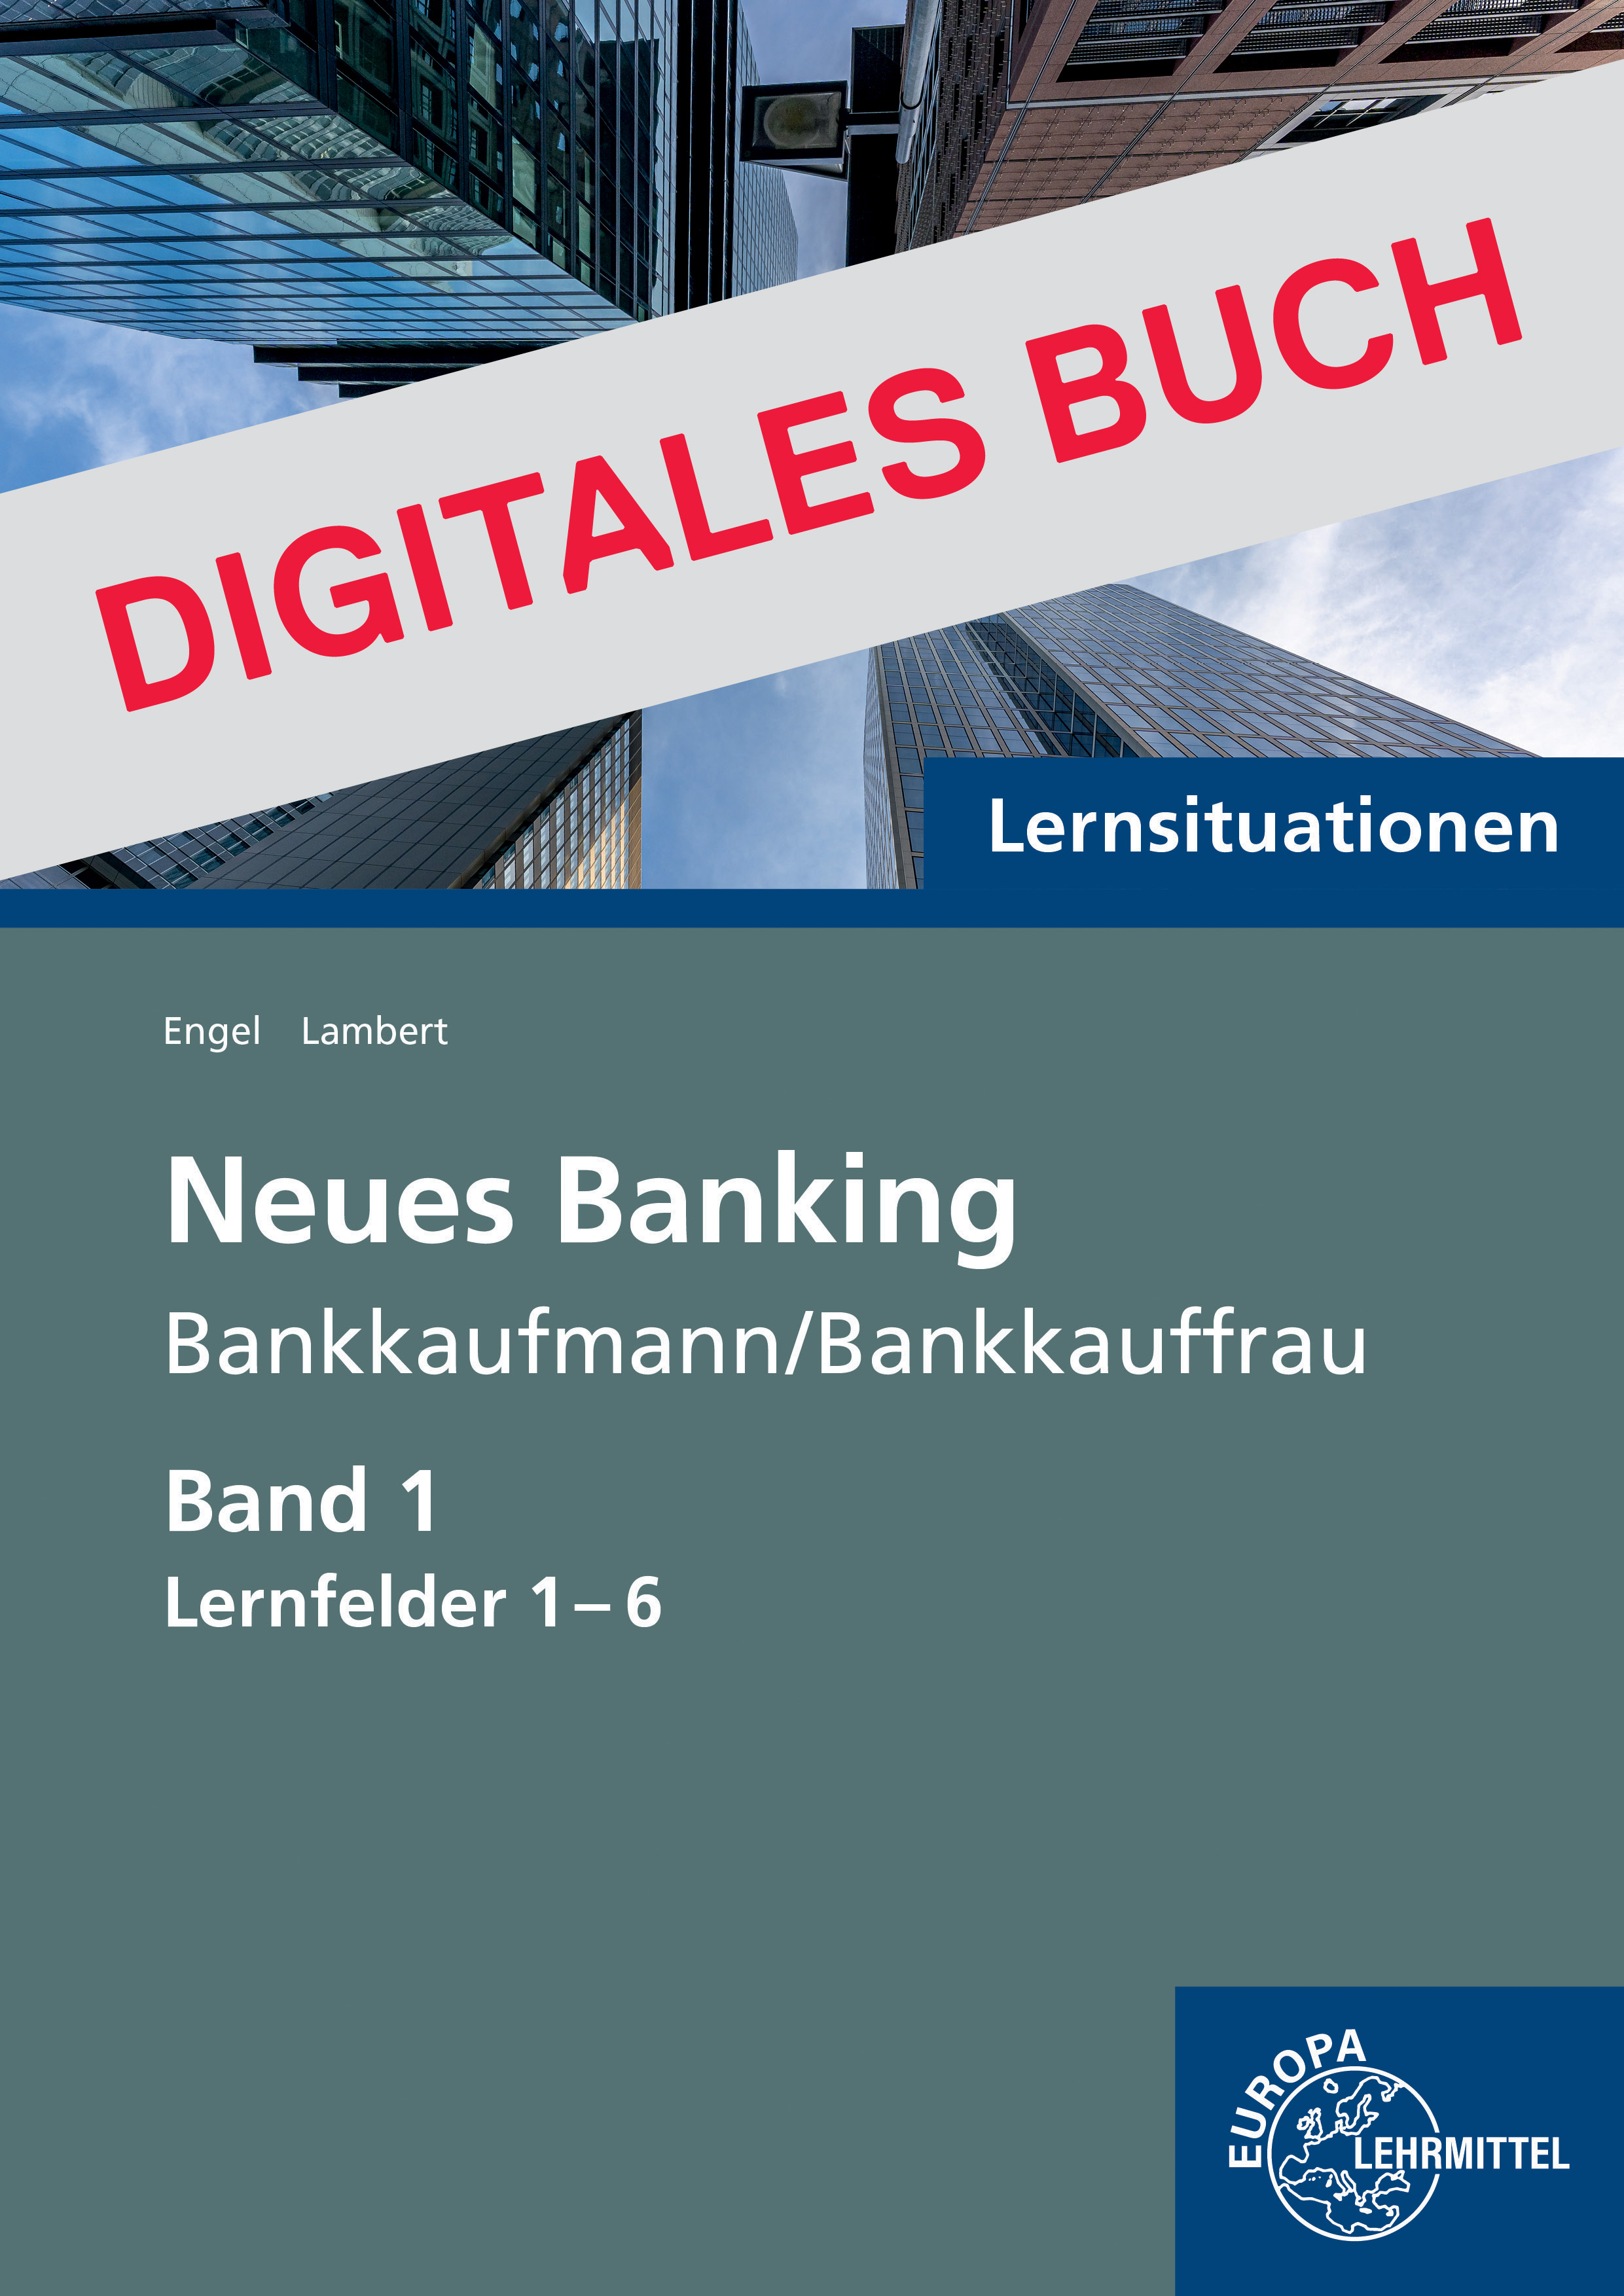 Lernsituationen Neues Banking Band 1 Lernfelder 1-6 - Digitales Buch